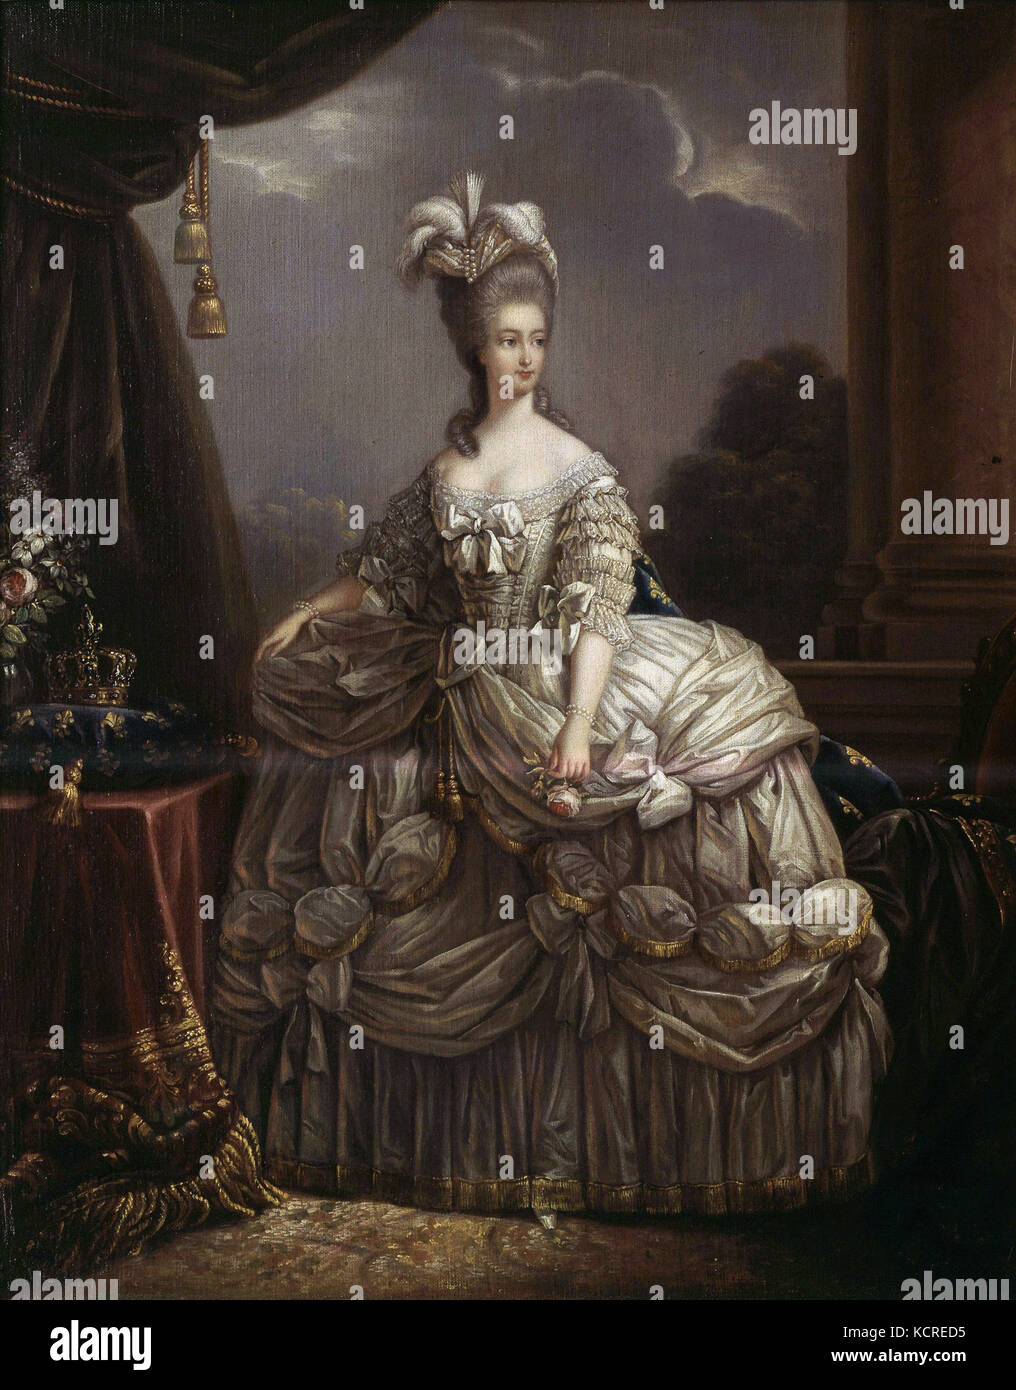 Elisabeth Vigée Le Brun  Portrait of Marie-Antoinette von Habsburg-Lorraine   queen of France Stock Photo